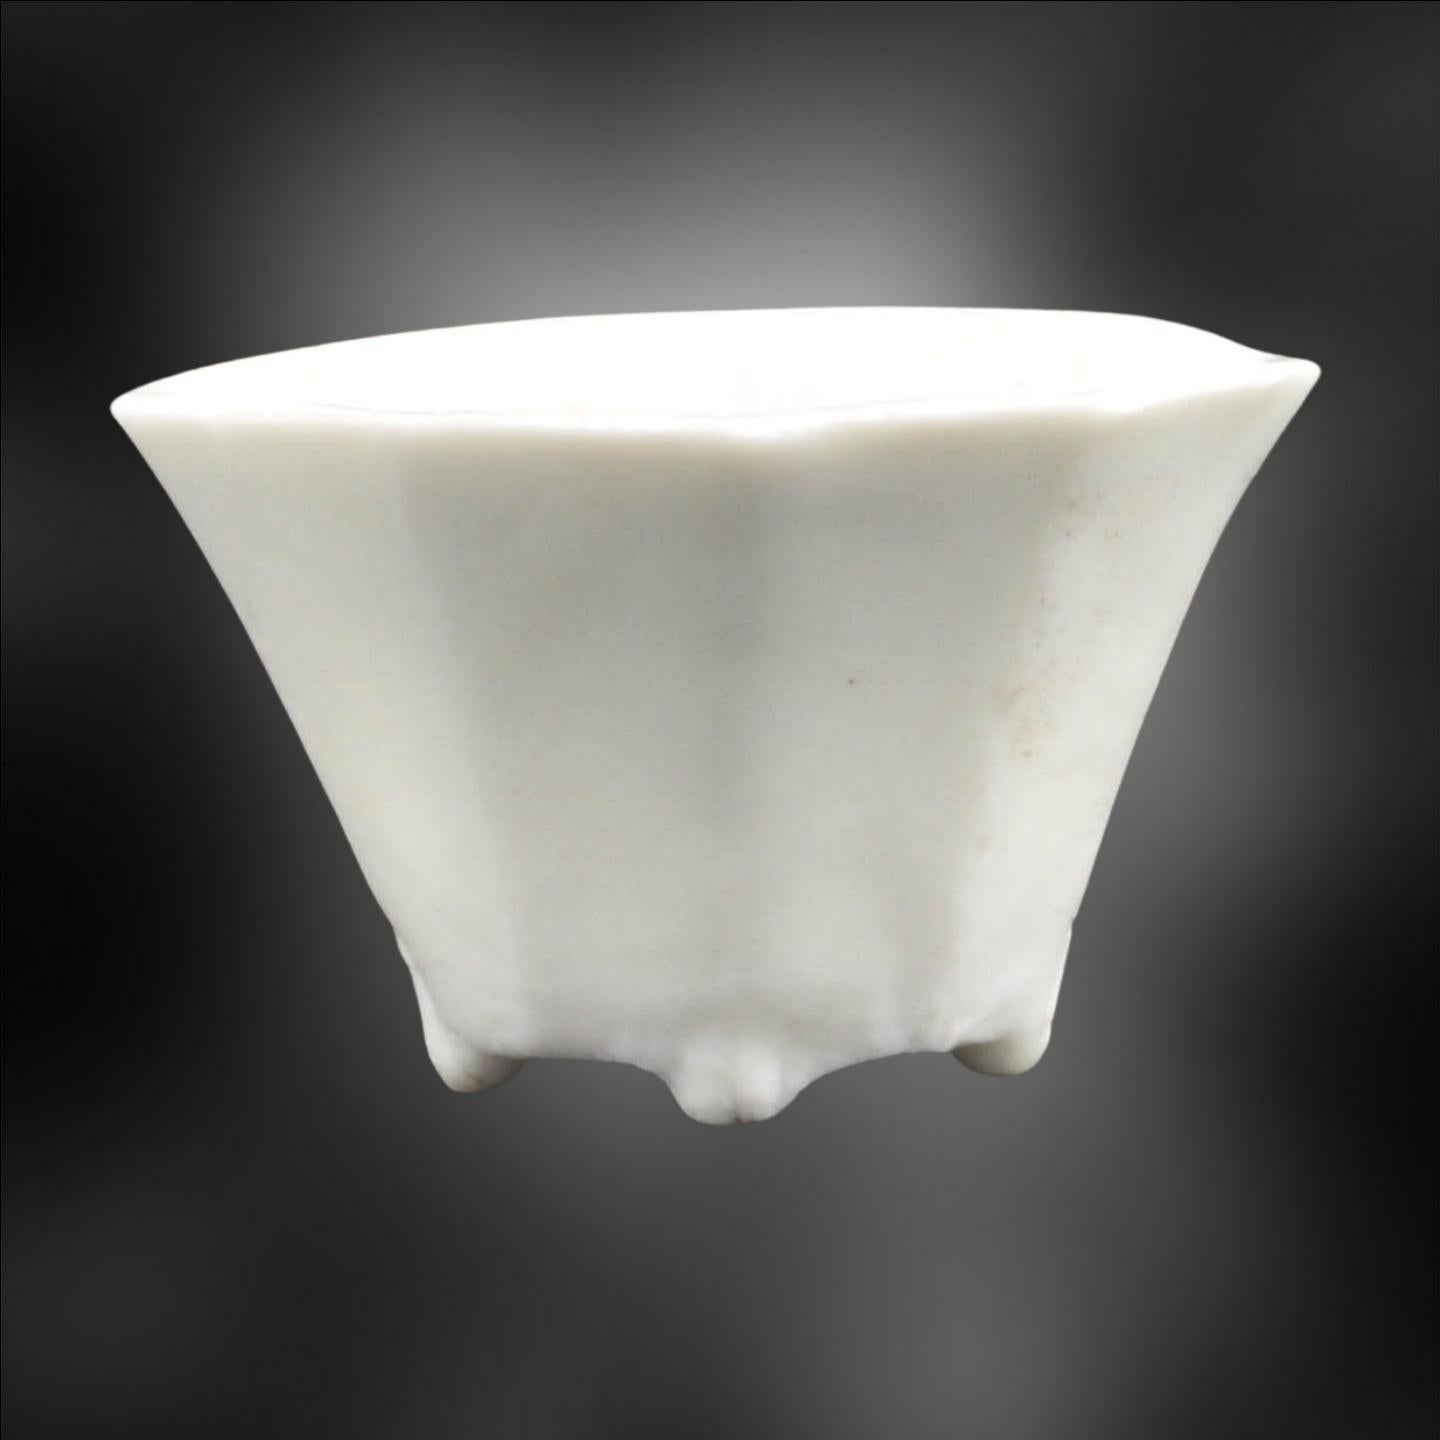 Chinesische Trinkbecher aus Porzellan aus dieser Zeit sind ein faszinierender Aspekt der chinesischen Keramikkunst und Kulturgeschichte. Die Qing-Dynastie (1644-1912) war berühmt für ihre Porzellanproduktion, die während der Herrschaft des